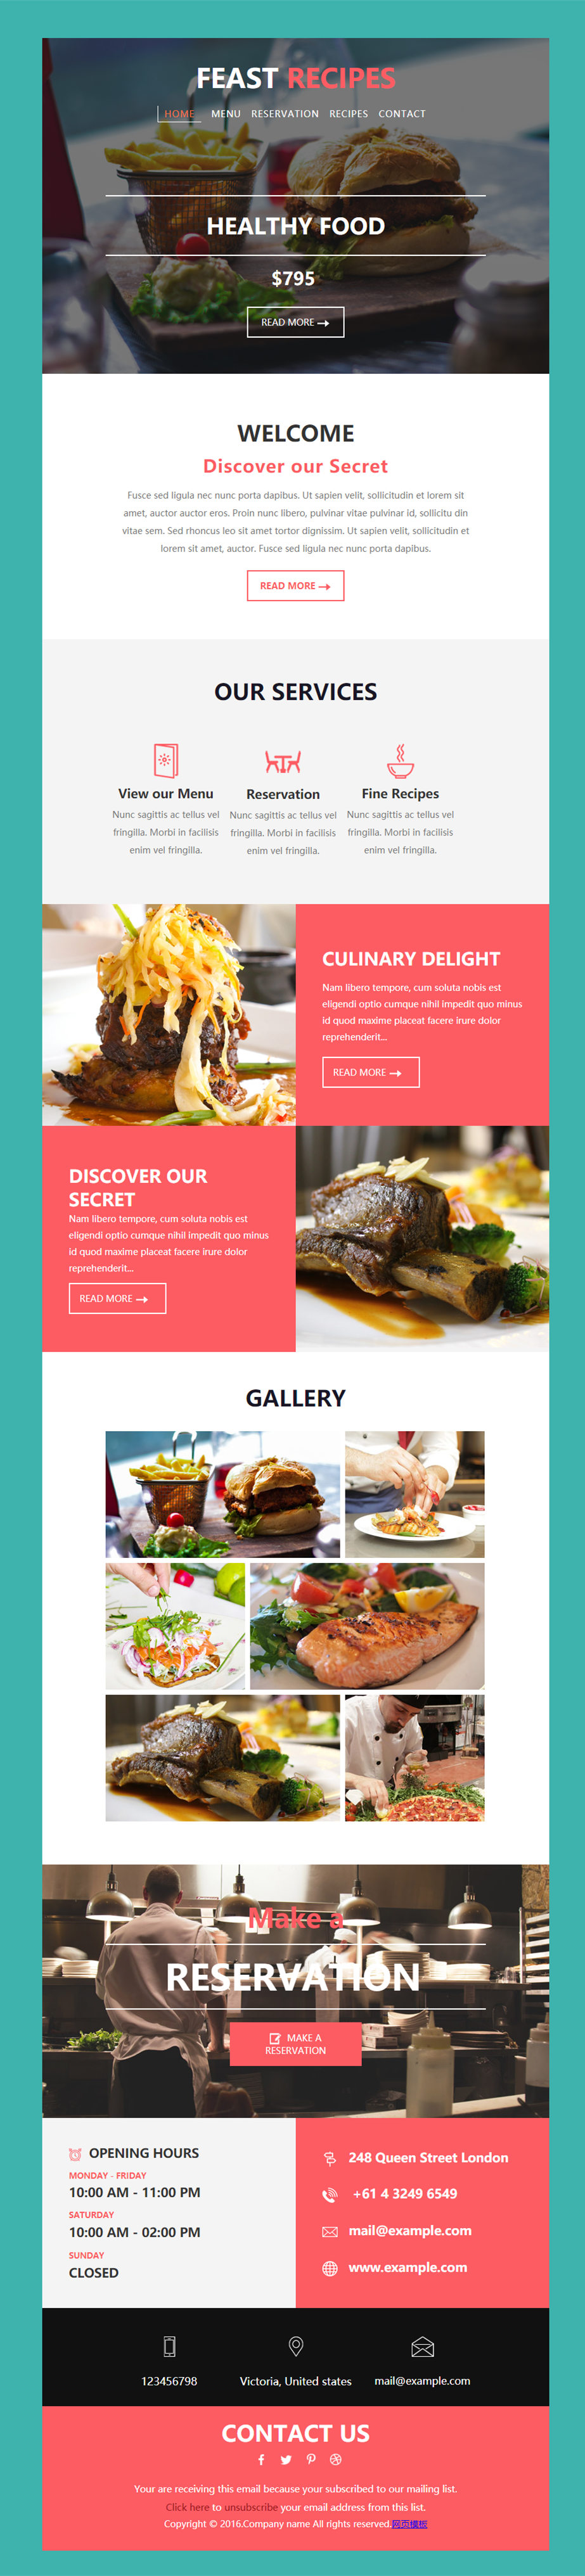 纯色背景的美食企业网页模板下载